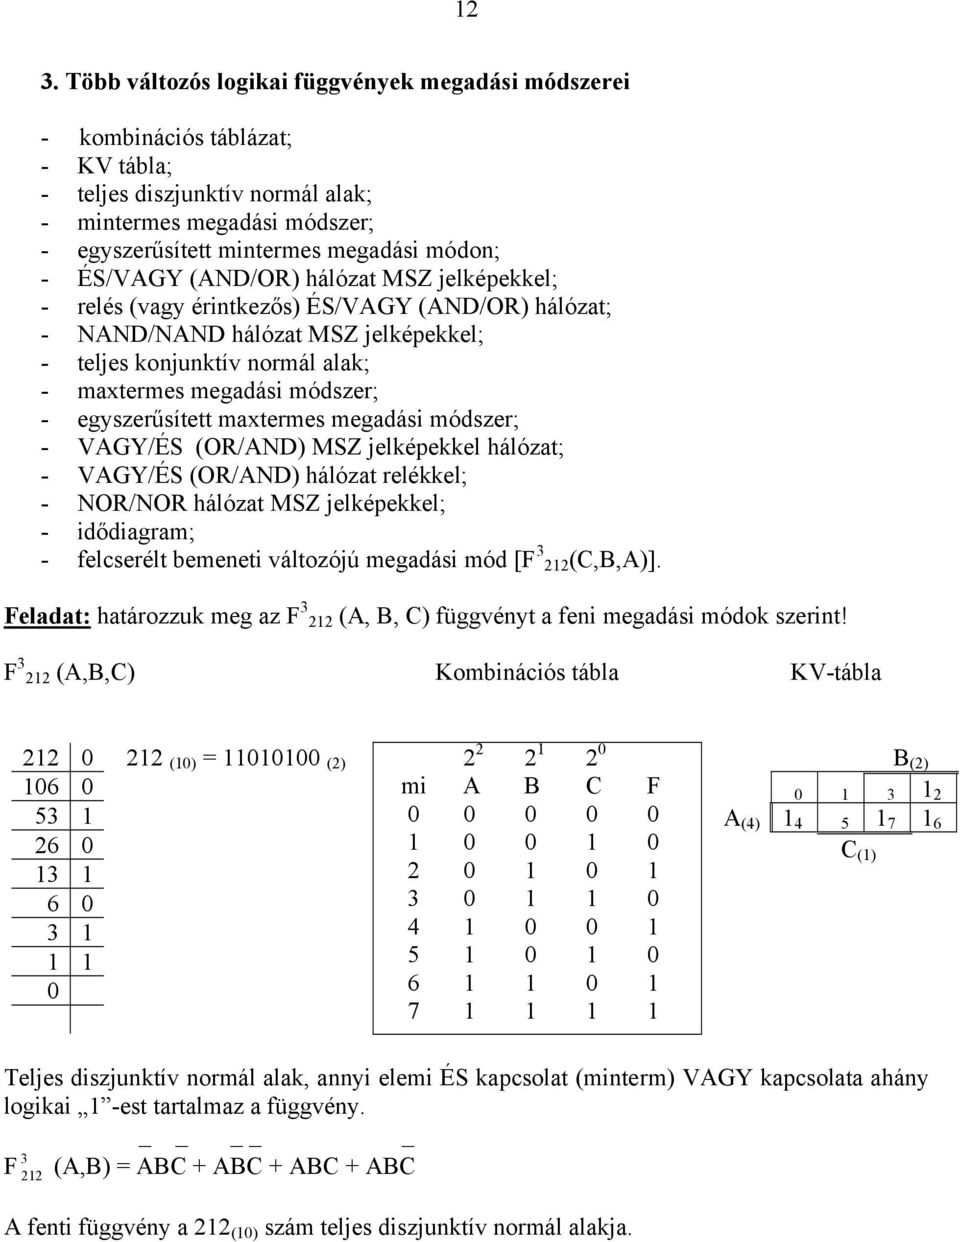 egyszerűsített maxtermes megadási módszer; - VGY/ÉS (OR/ND) MSZ jelképekkel hálózat; - VGY/ÉS (OR/ND) hálózat relékkel; - NOR/NOR hálózat MSZ jelképekkel; - idődiagram; - felcserélt bemeneti